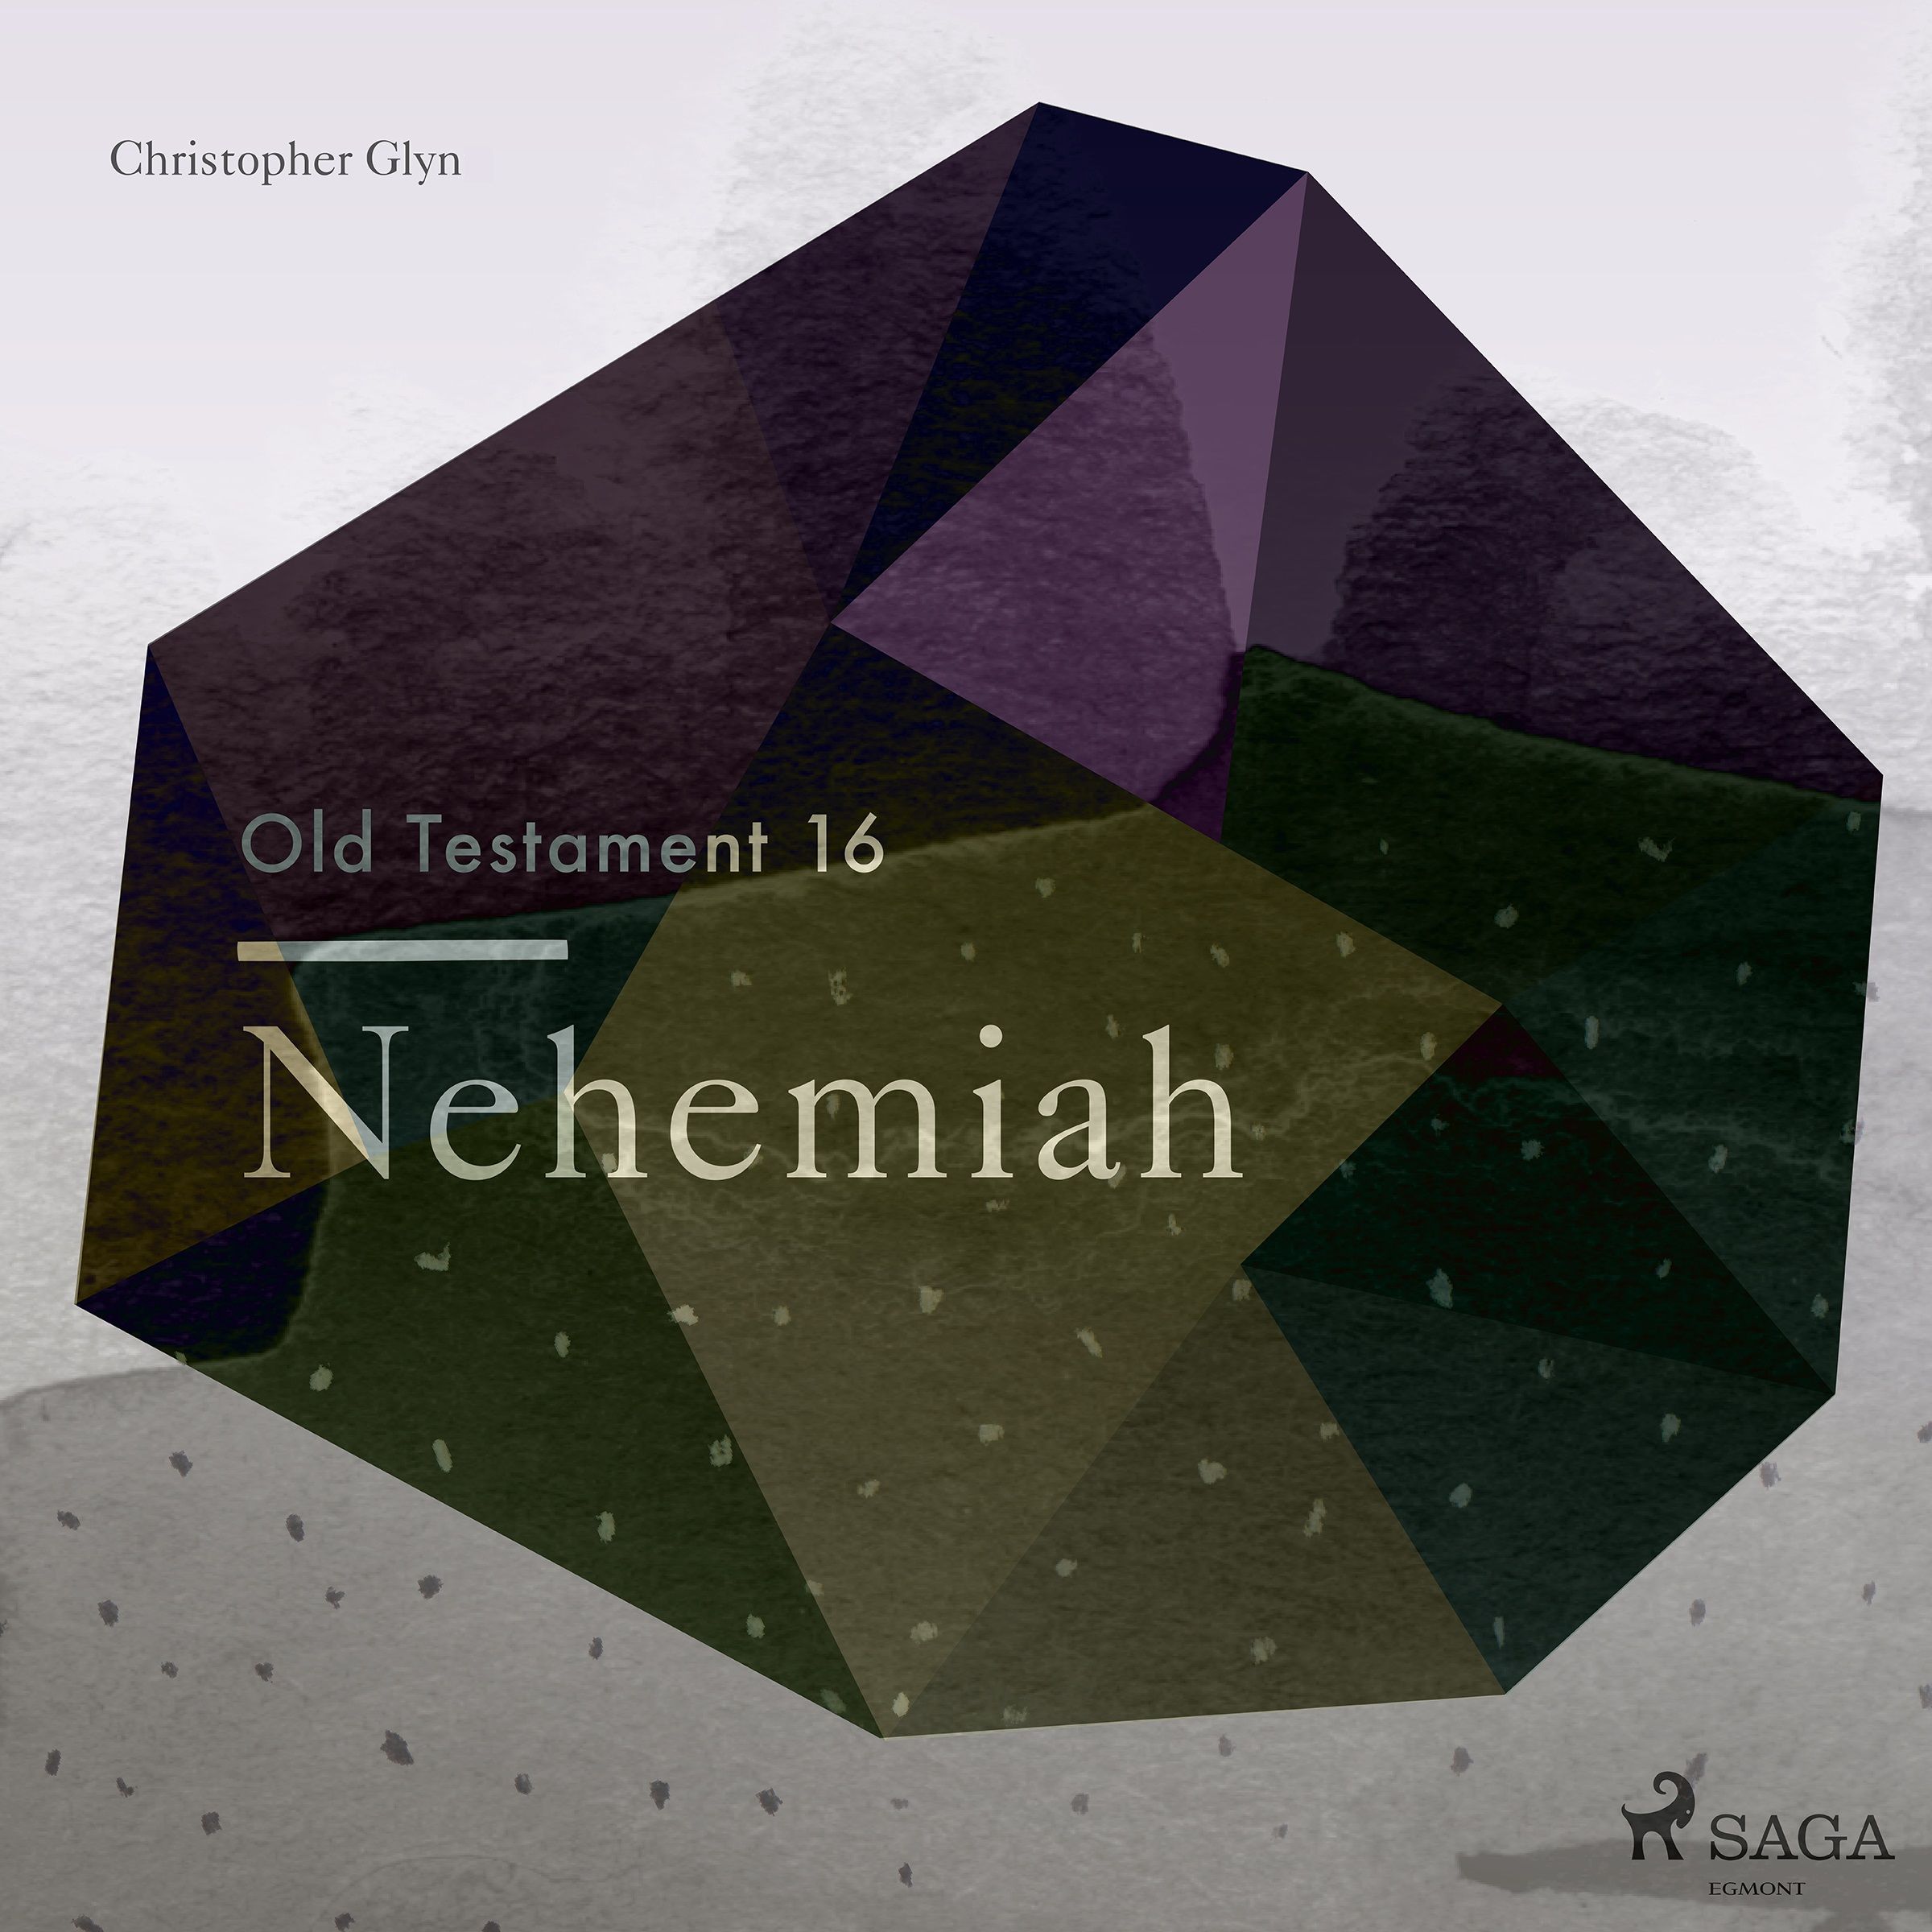 The Old Testament 16 - Nehemiah, ljudbok av Christopher Glyn